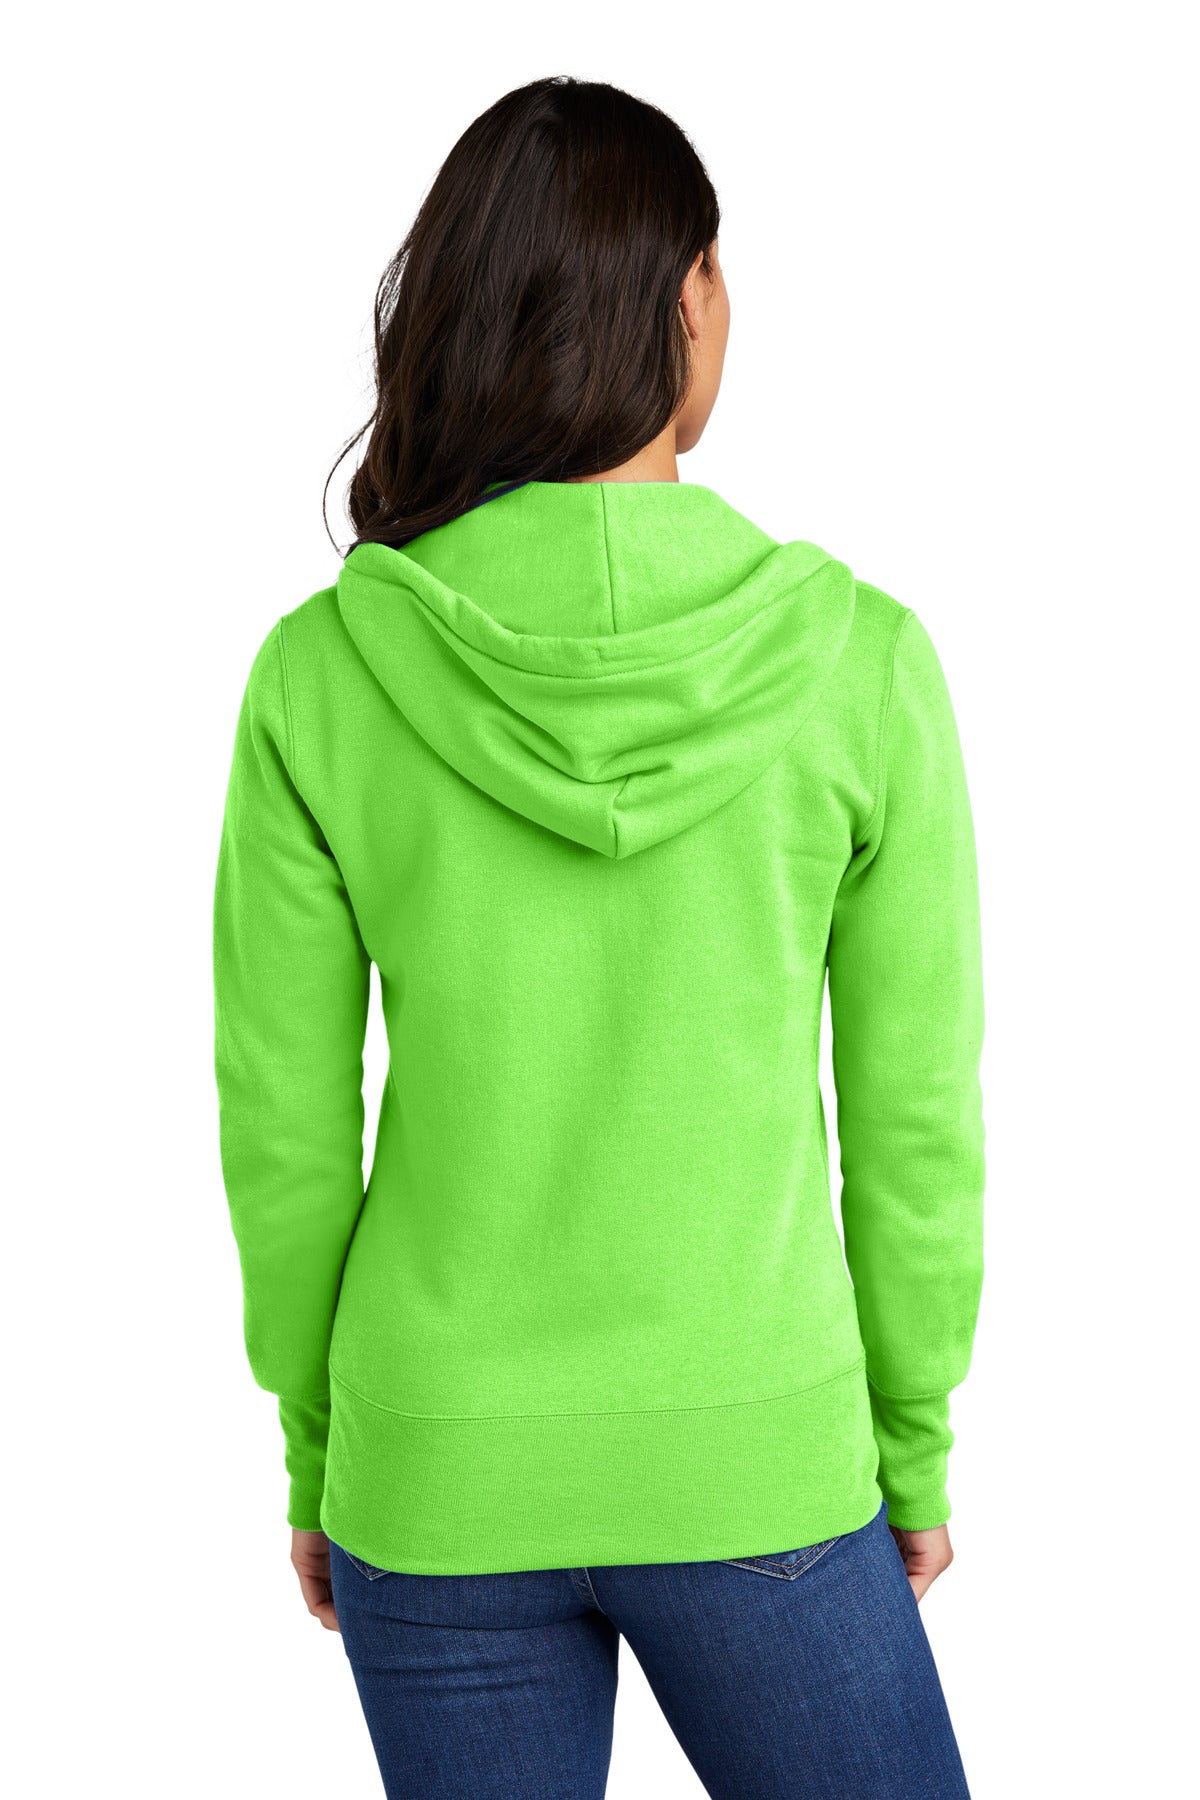 Port & Company Ladies Core Fleece Full-Zip Hooded Sweatshirt. LPC78ZH